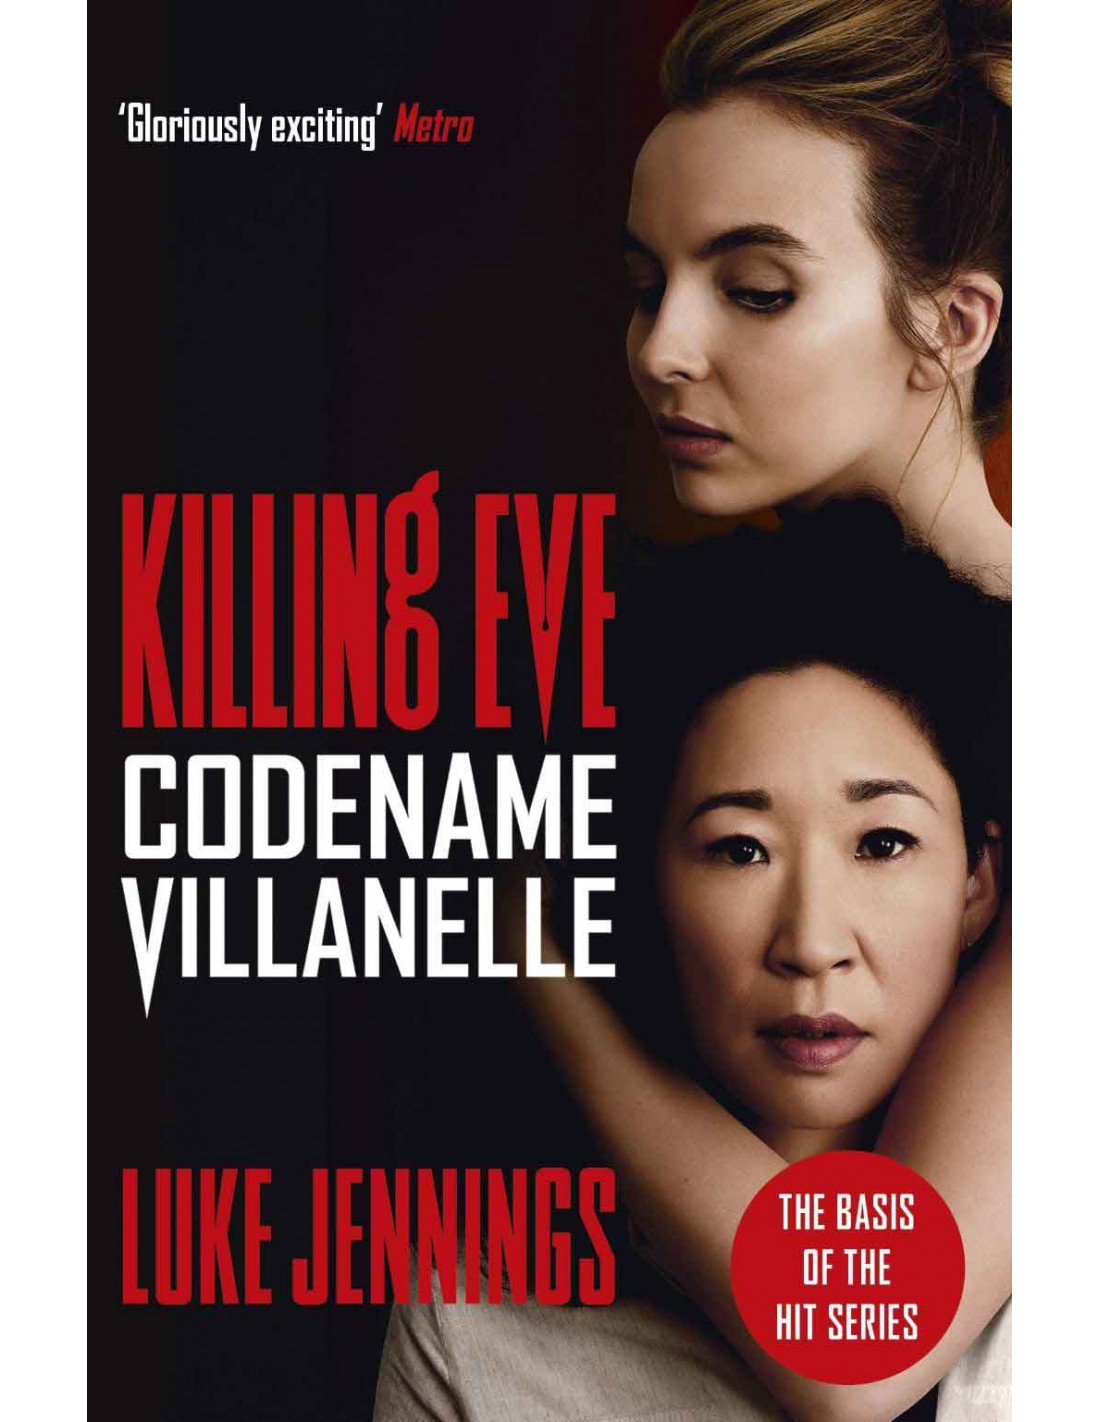 Luke Jennings: Codename Villanelle (2014, Hodder & Stoughton)